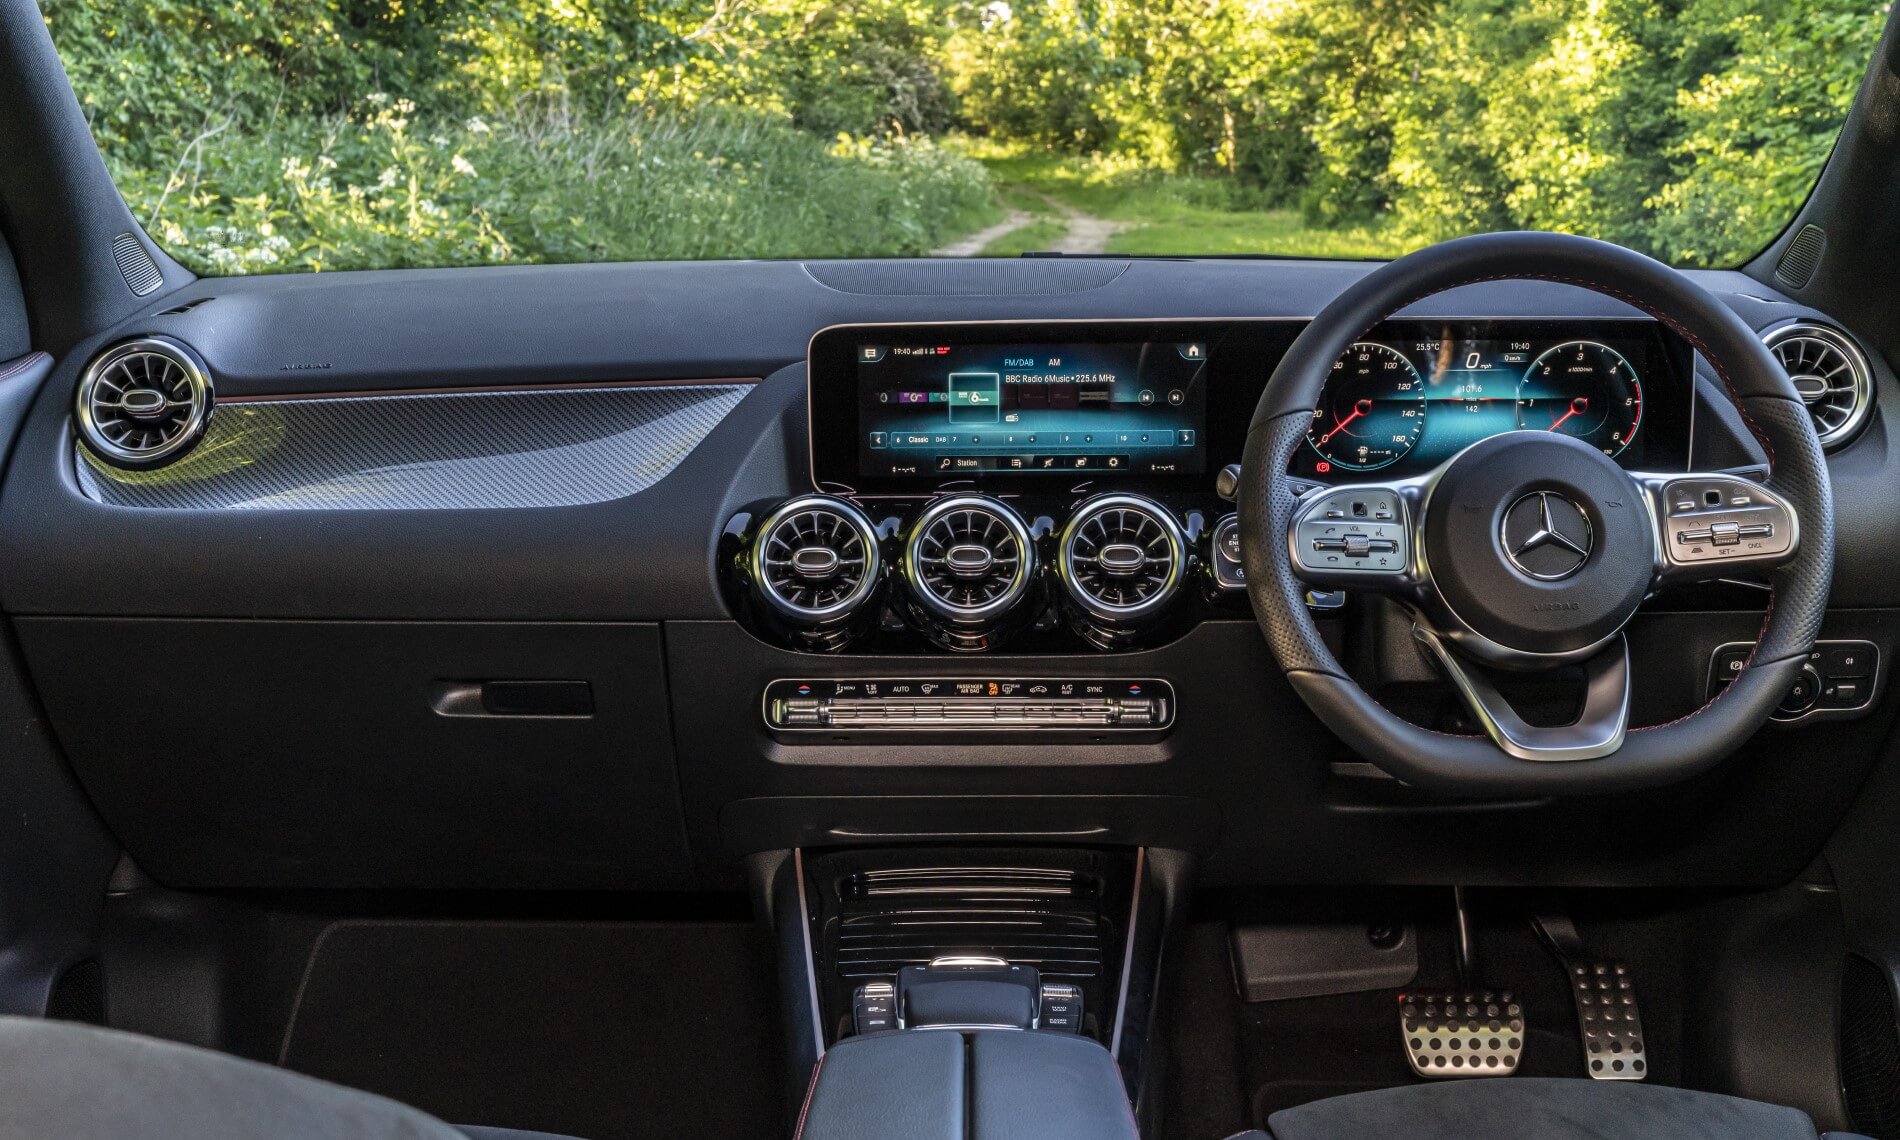 Mercedes-Benz GLA200d interior